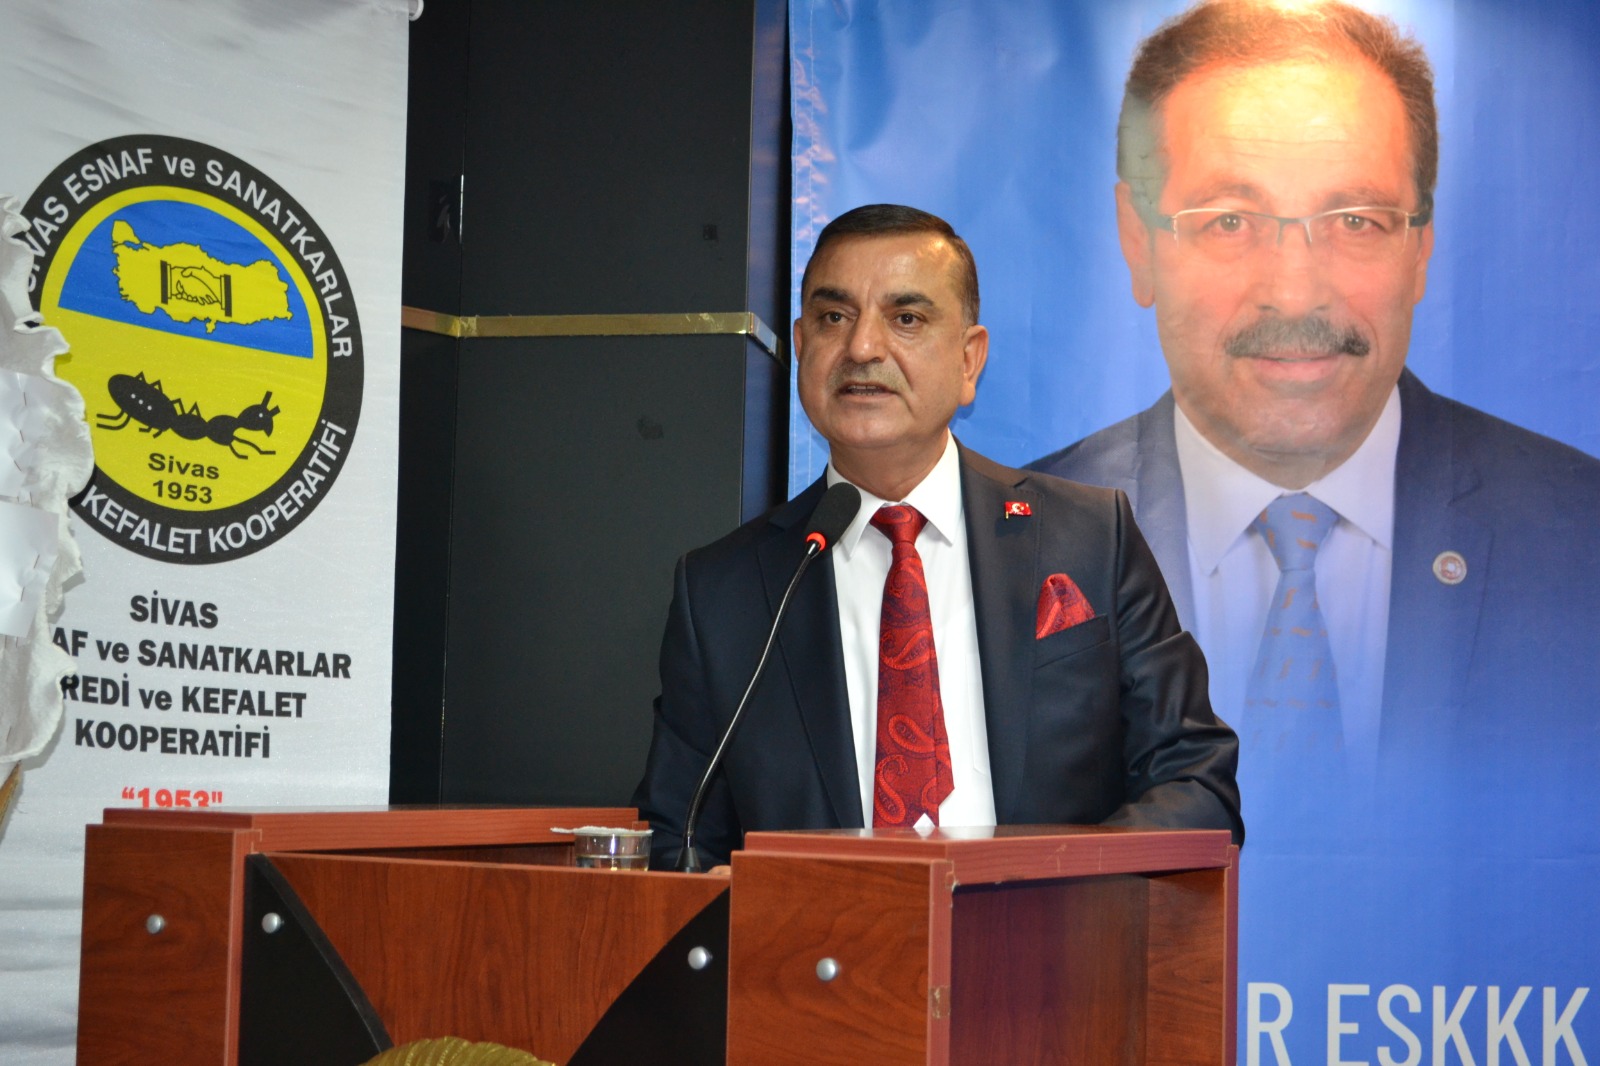 Sivas Bölge Birliği Başkanılığı’na Mesut Dursun seçildi